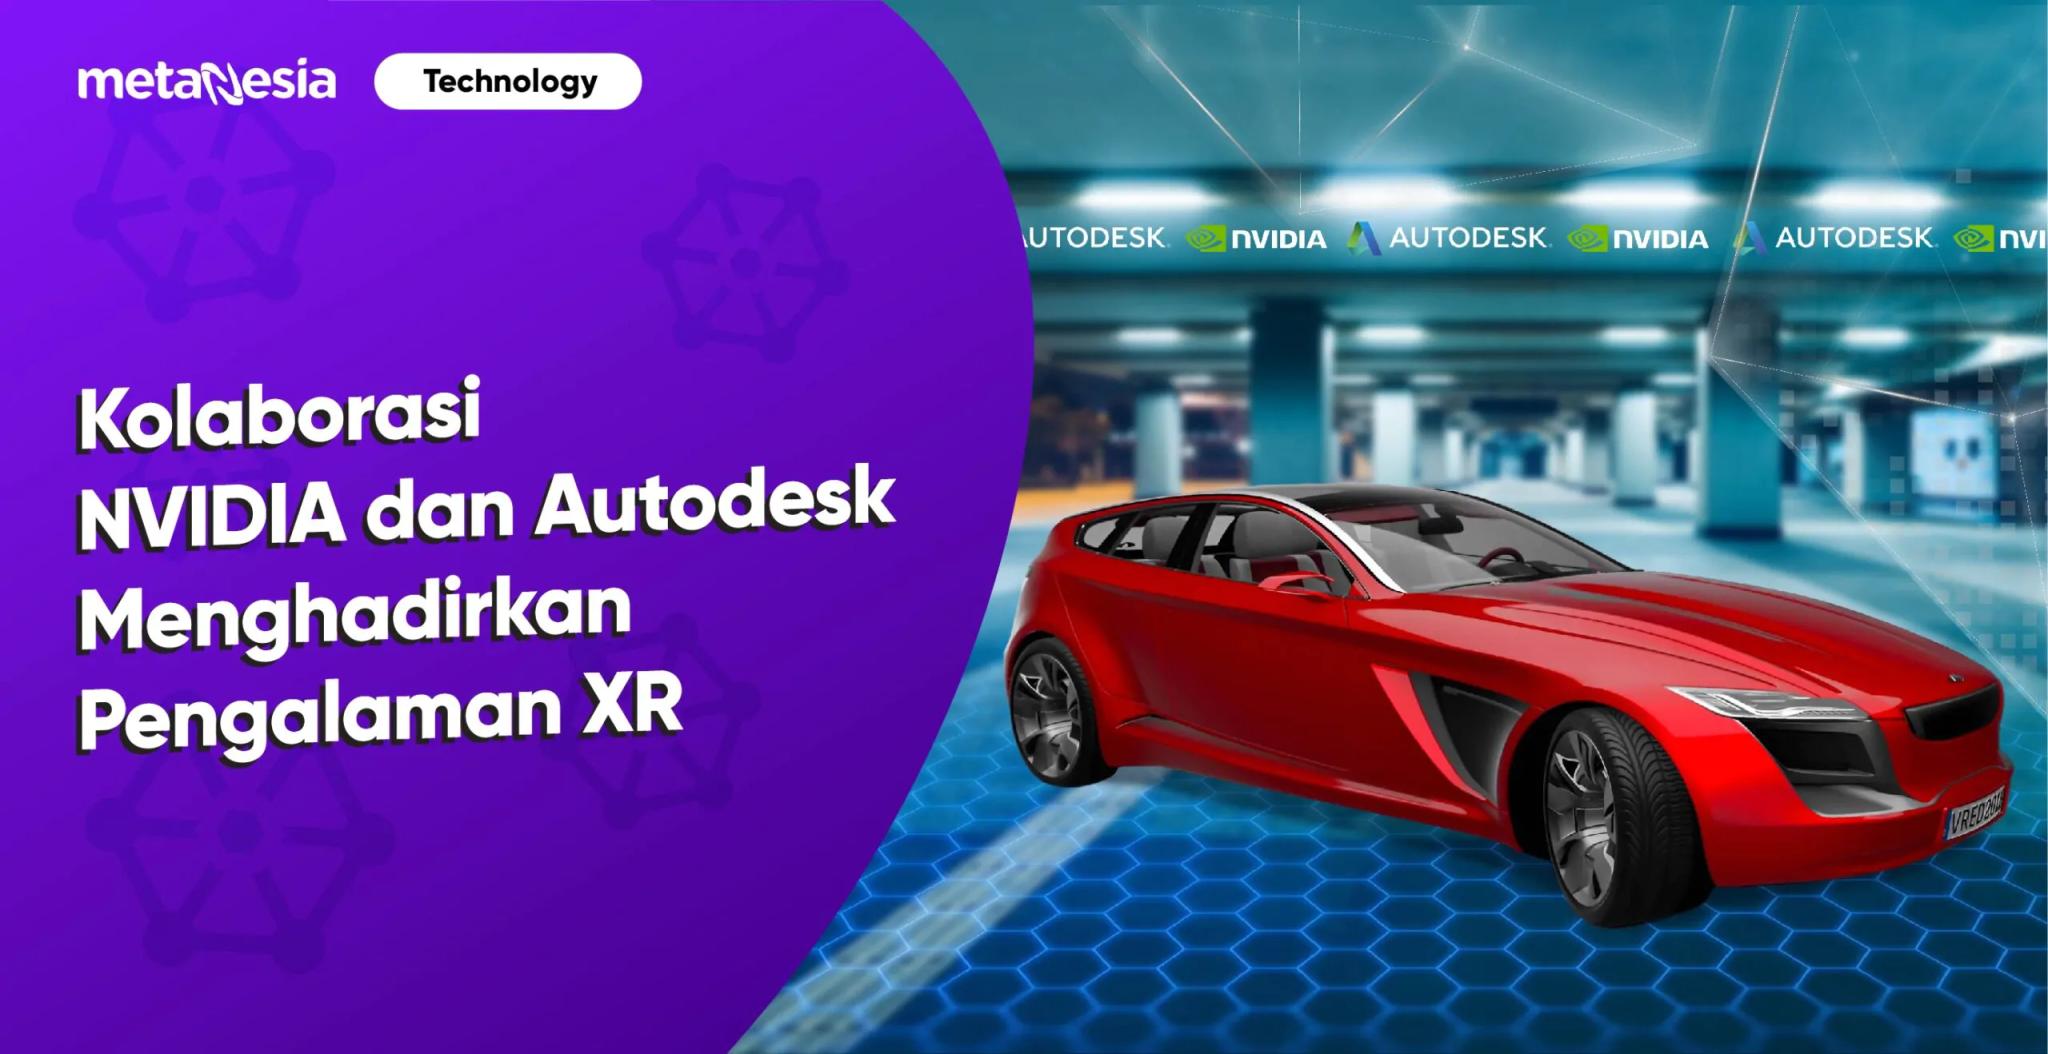 Kolaborasi NVIDIA dan Autodesk dalam Menghadirkan Pengalaman XR Kolaboratif ke Cloud